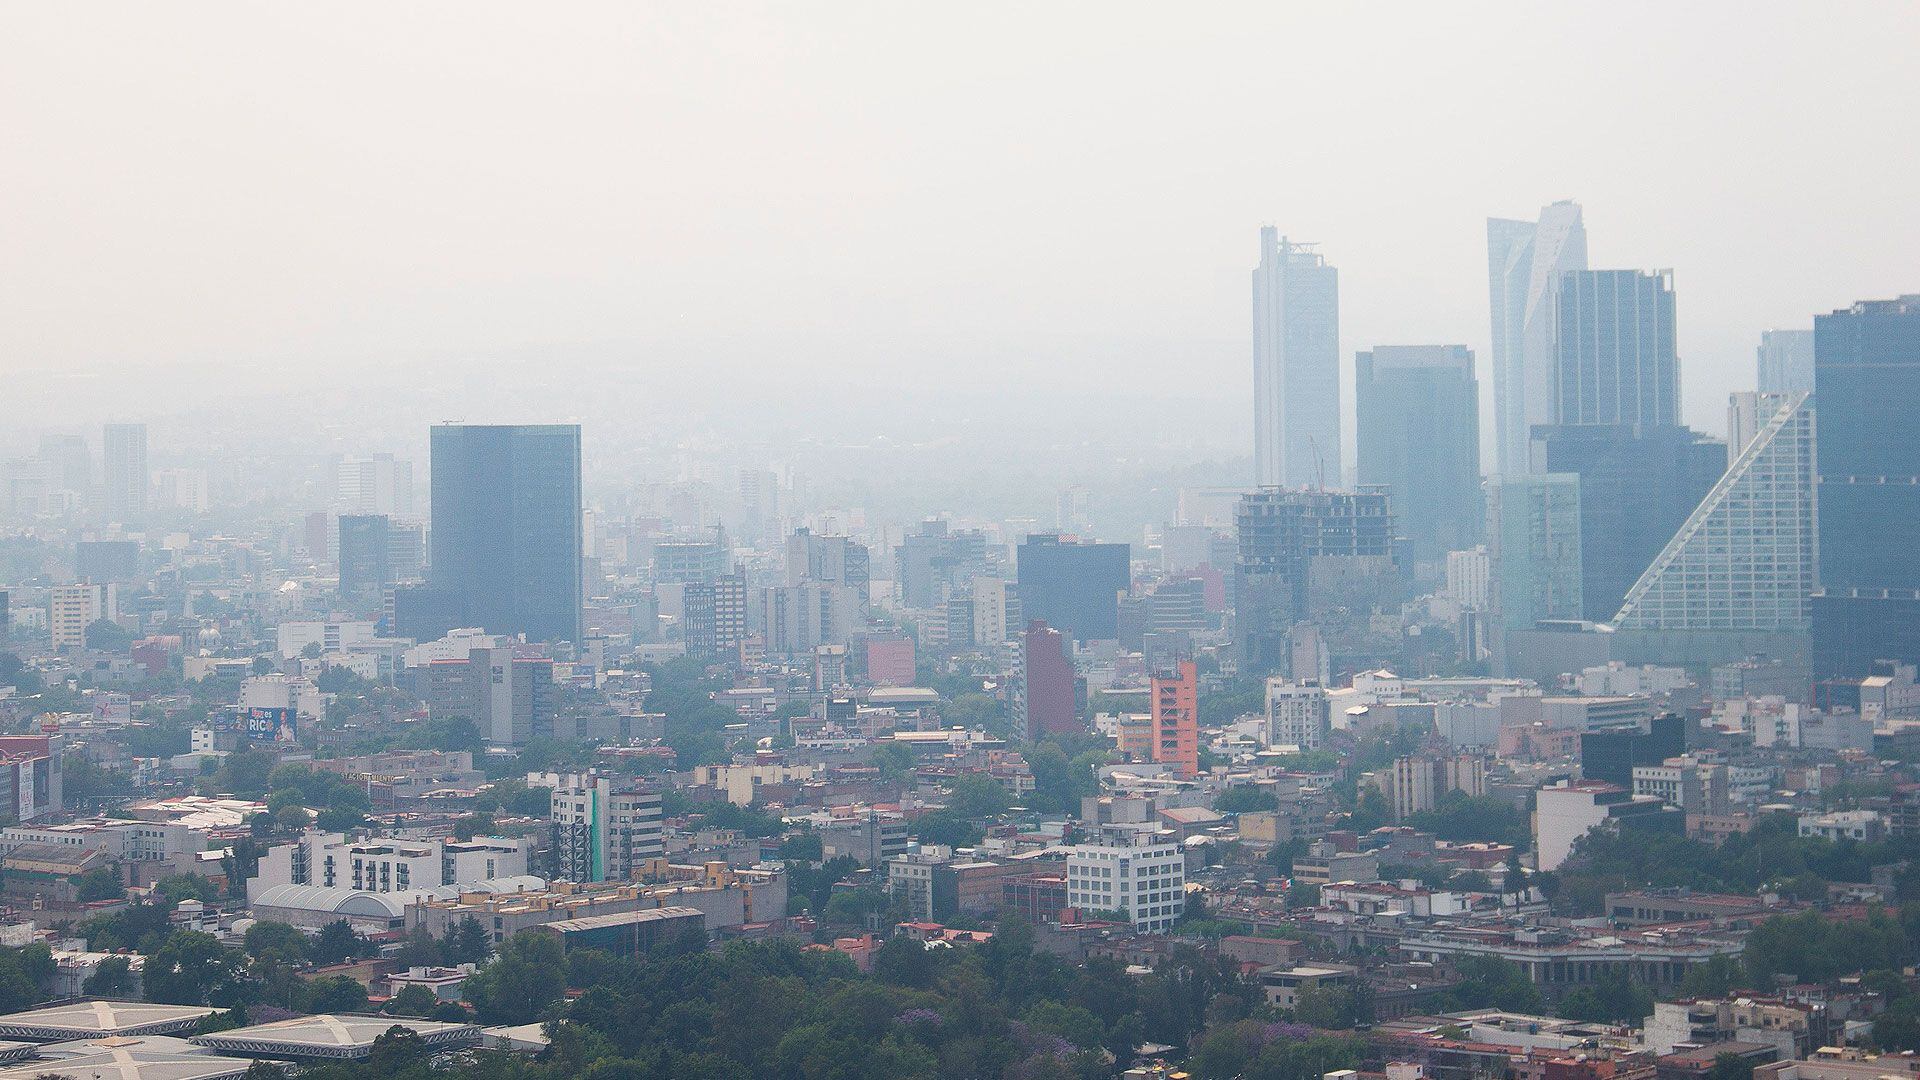 La calidad del aire afecta especialmente a grupos vulnerables como niños, ancianos y personas con enfermedades respiratorias preexistentes (Cuartoscuro)